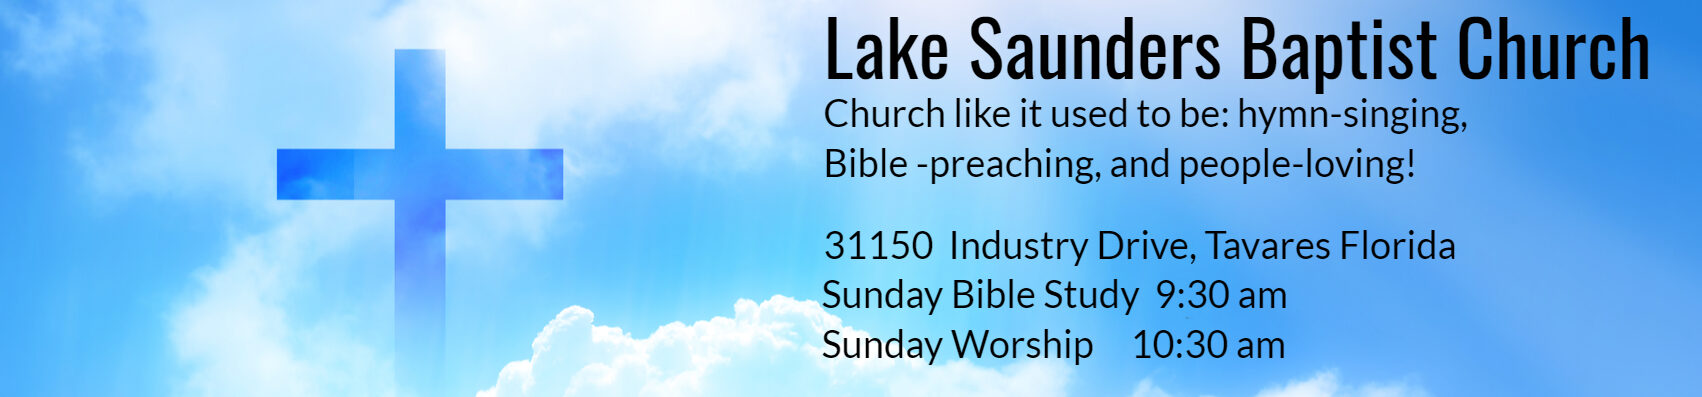 Lake Saunders Baptist Church